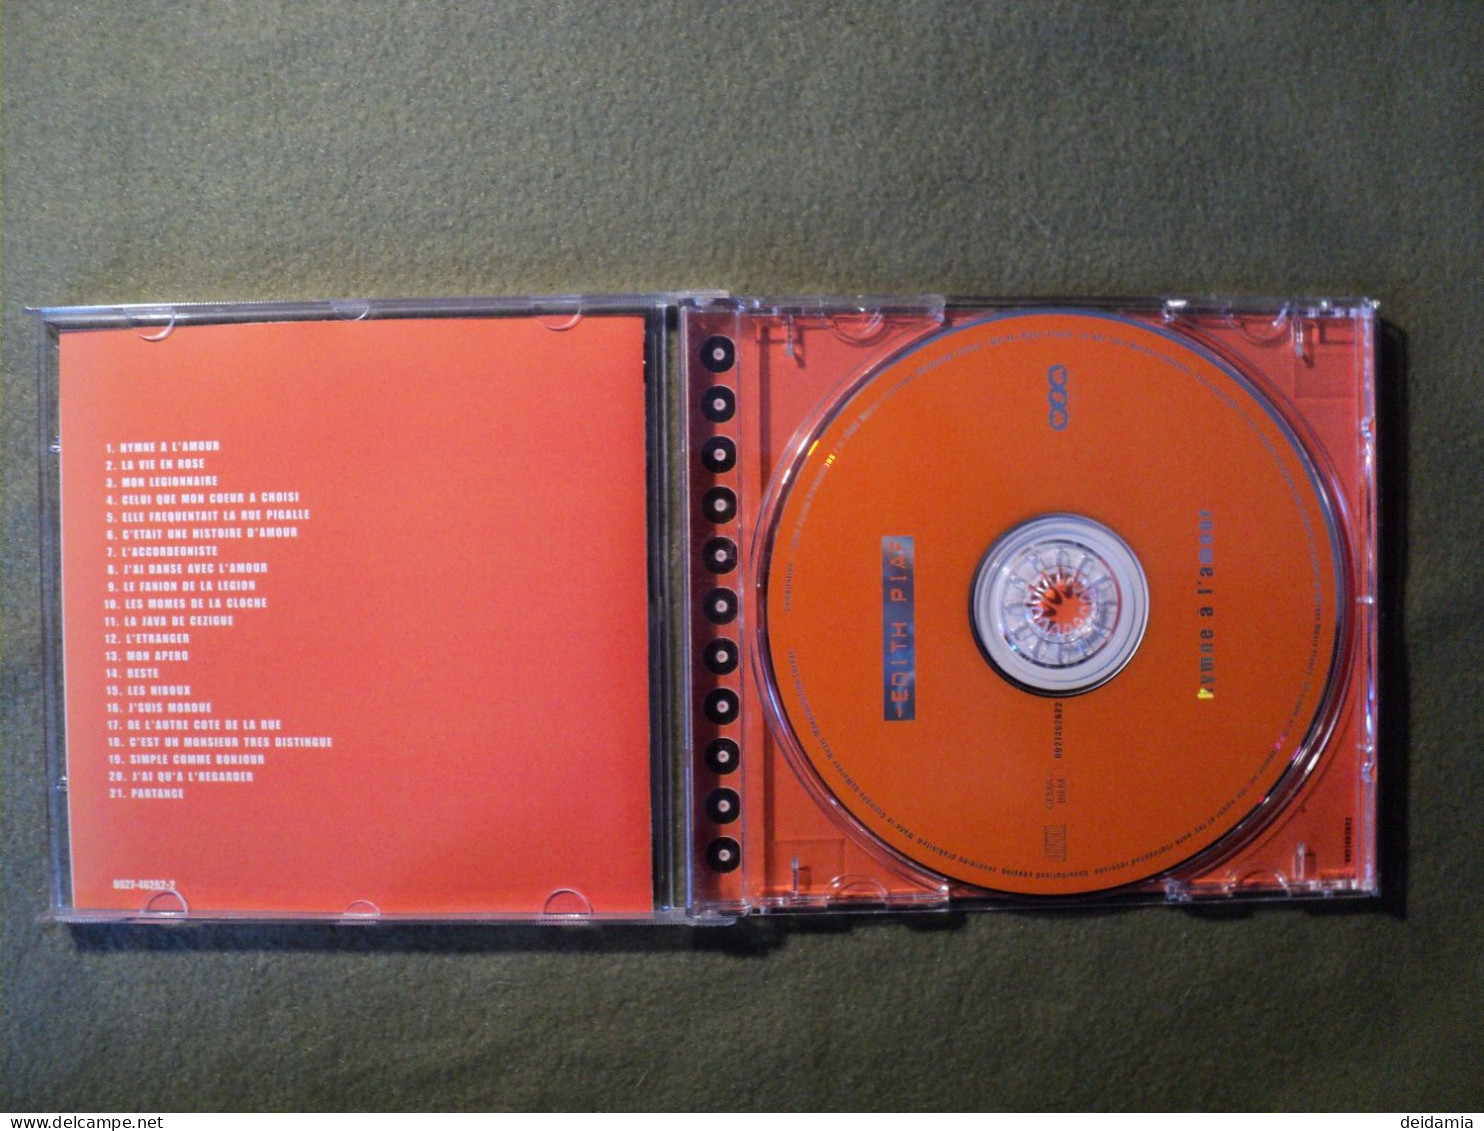 EDITH PIAF. CD 21 TITRES DE 2002. HYMNE A L AMOUR. WARNER 0927462622 HYMNE A L AMOUR / LA VIE EN ROSE / MON LEGIONNAIRE - Other - French Music